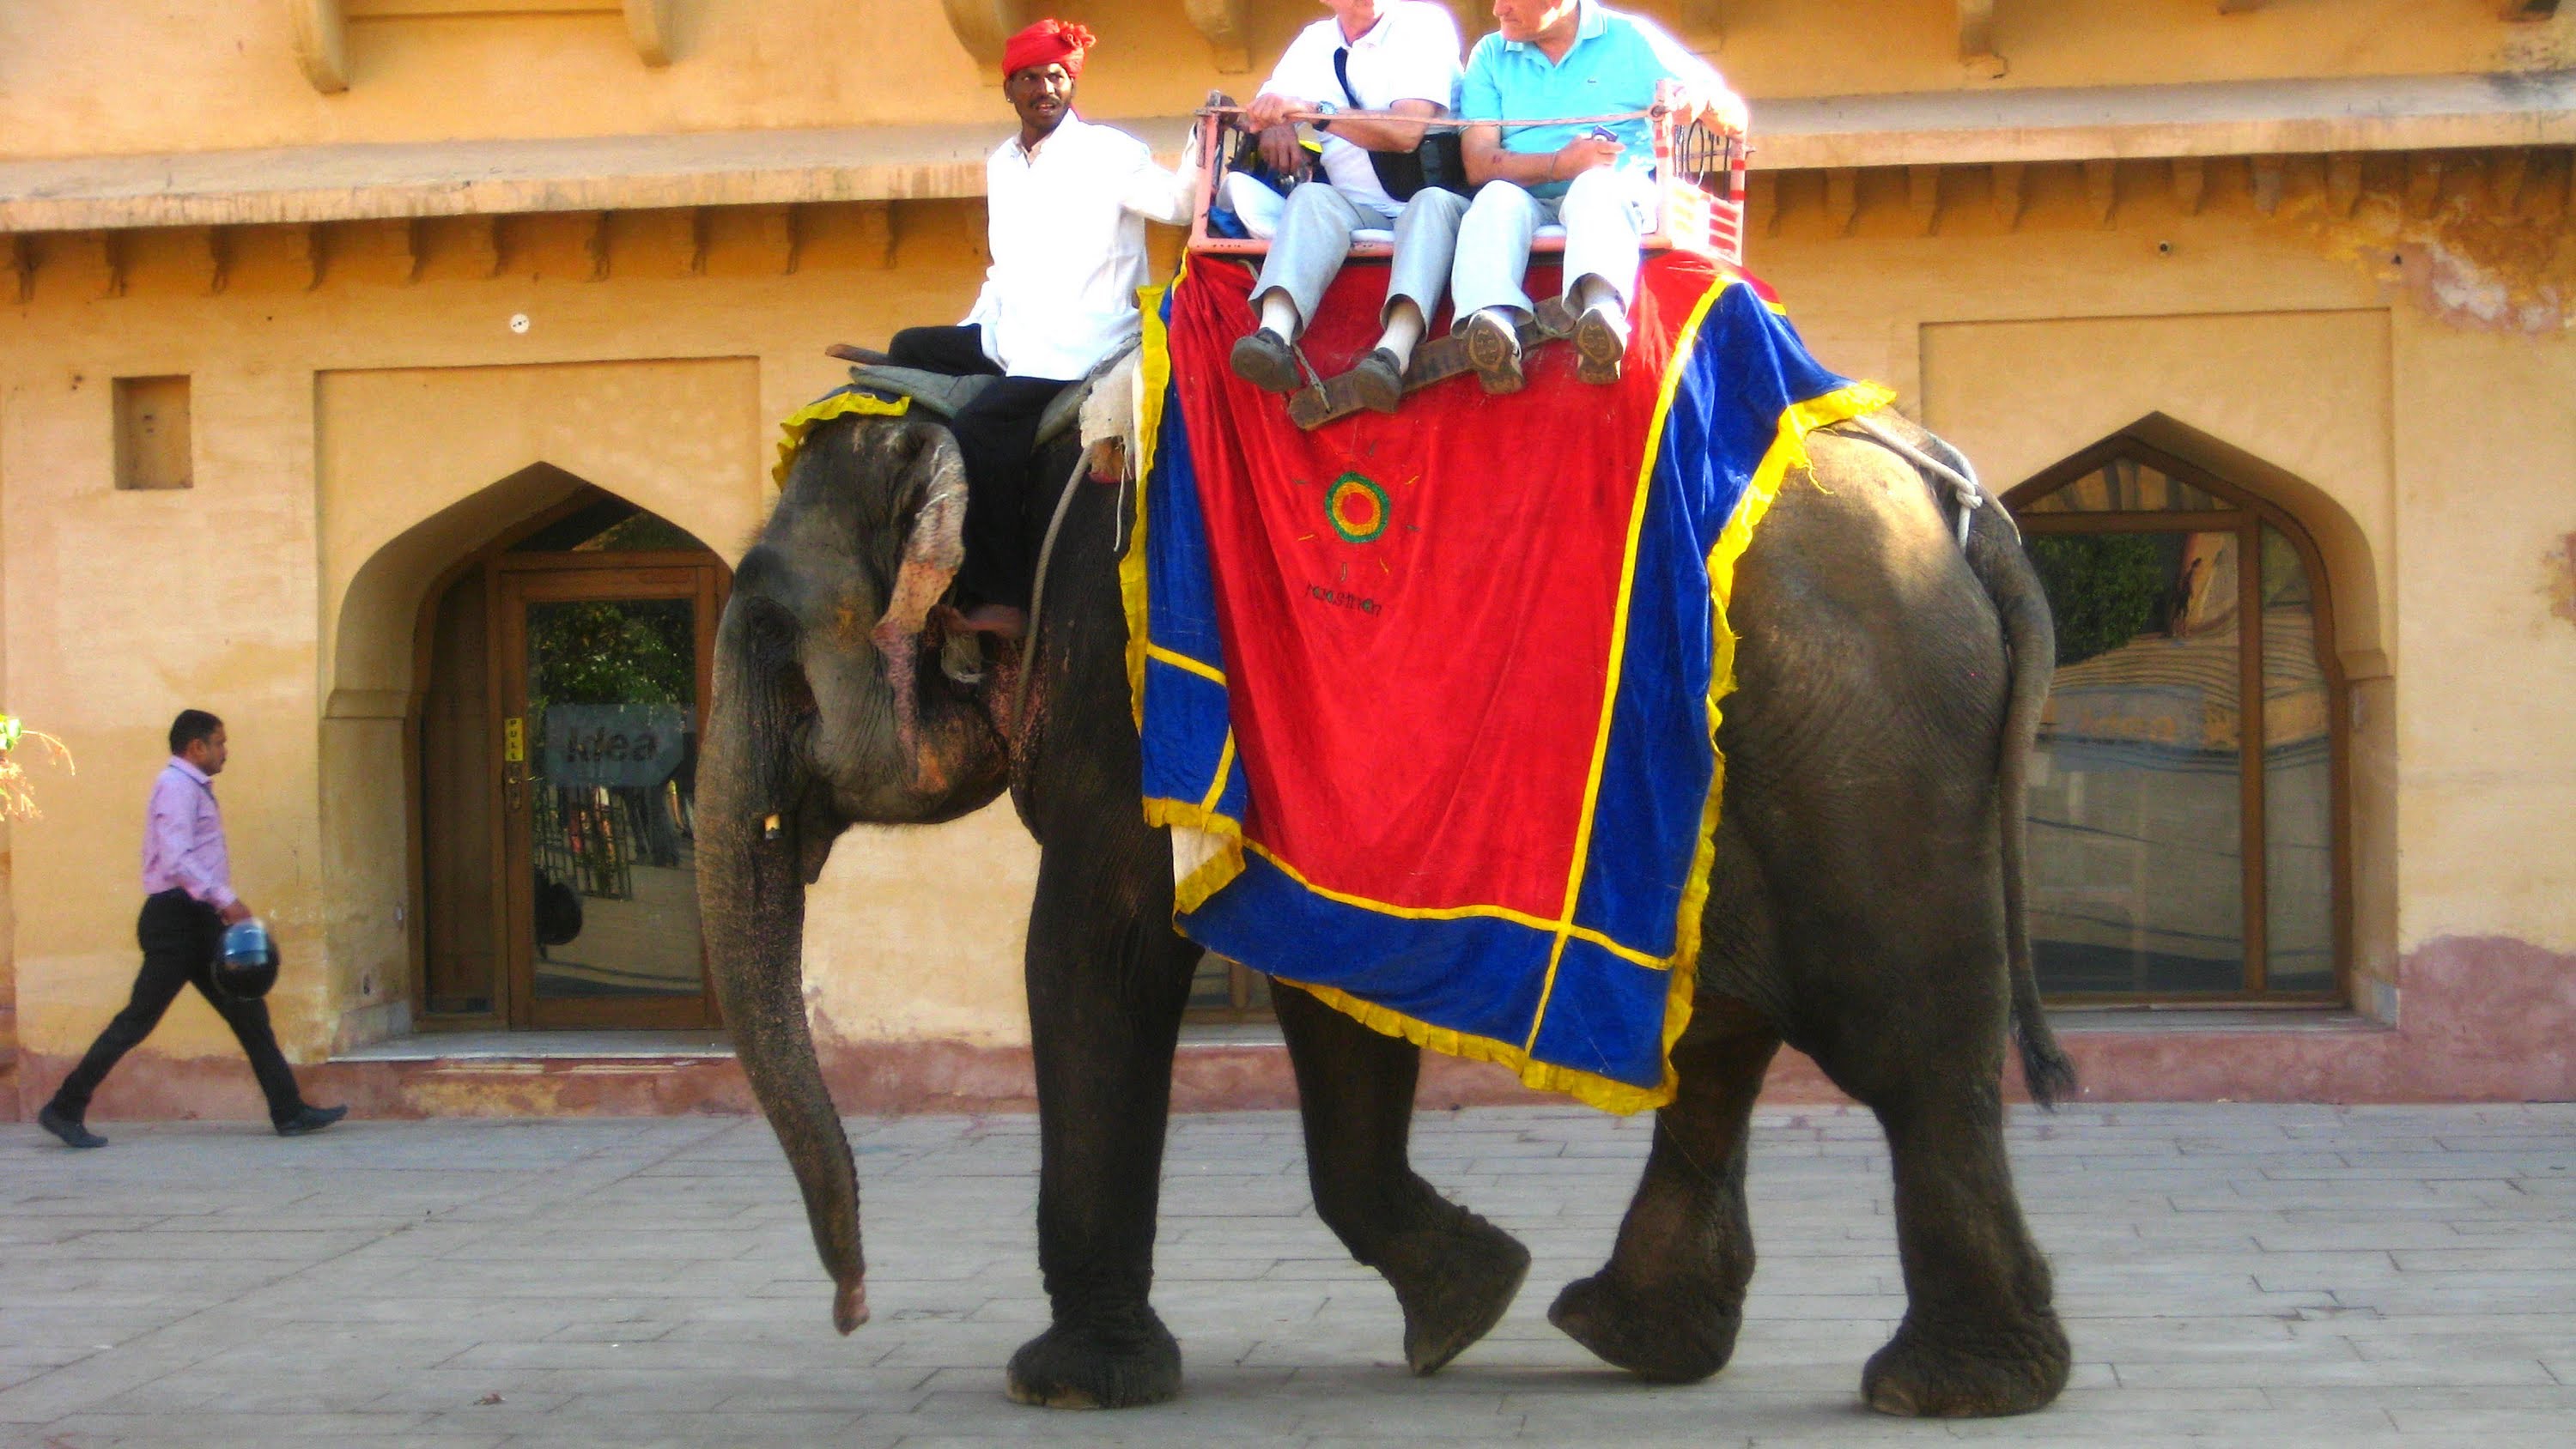 Elephant Ride Video - Elephant Ride at Jaipur Tourism (Hindi) - YouTube